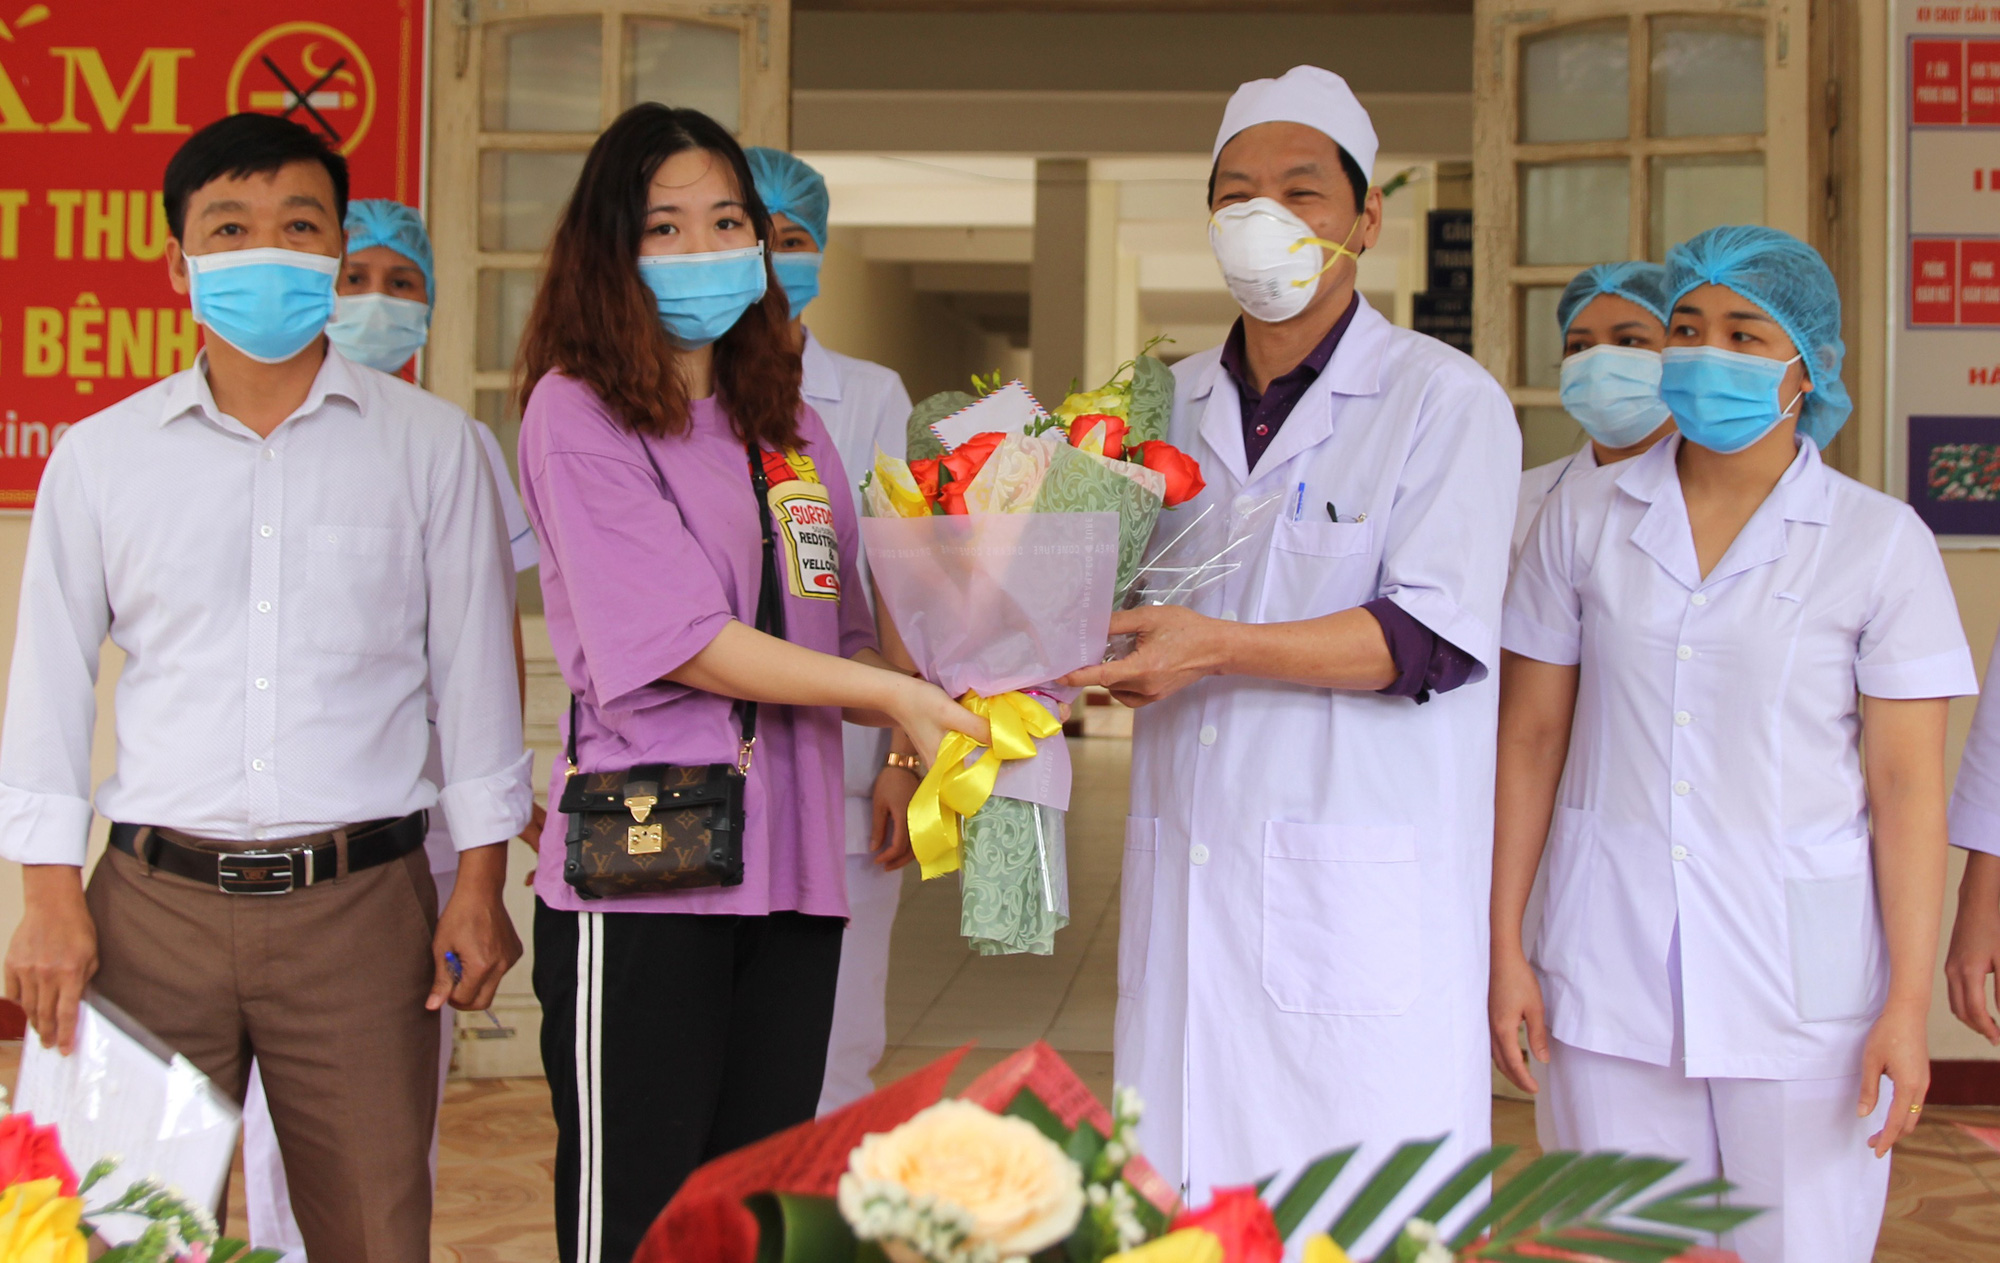 Nữ bệnh nhân nhiễm Covid-19 ở Hà Tĩnh: Liều thuốc tốt nhất là lạc quan yêu đời để chiến thắng - Ảnh 3.